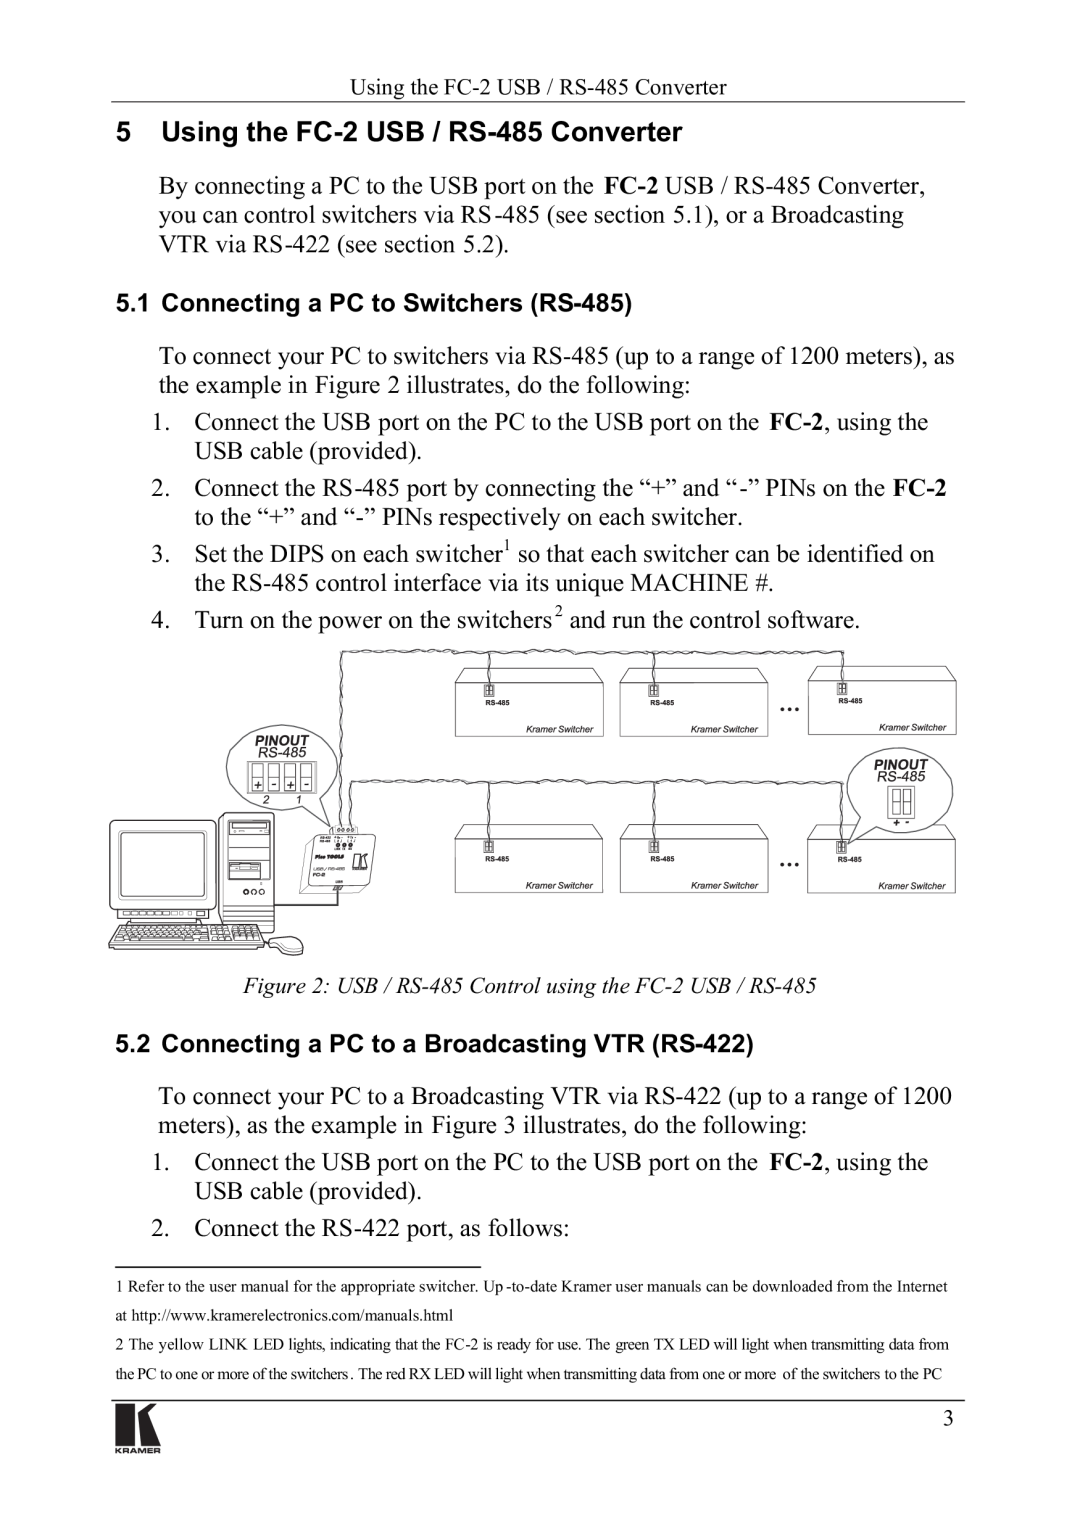 Kramer Electronics FC-2 manual 8VLQJWKH&86%56&RQYHUWHU, RQQHFWLQJD3&WRD%URDGFDVWLQJ97556, RQQHFWWKH56SRUWDVIROORZV 